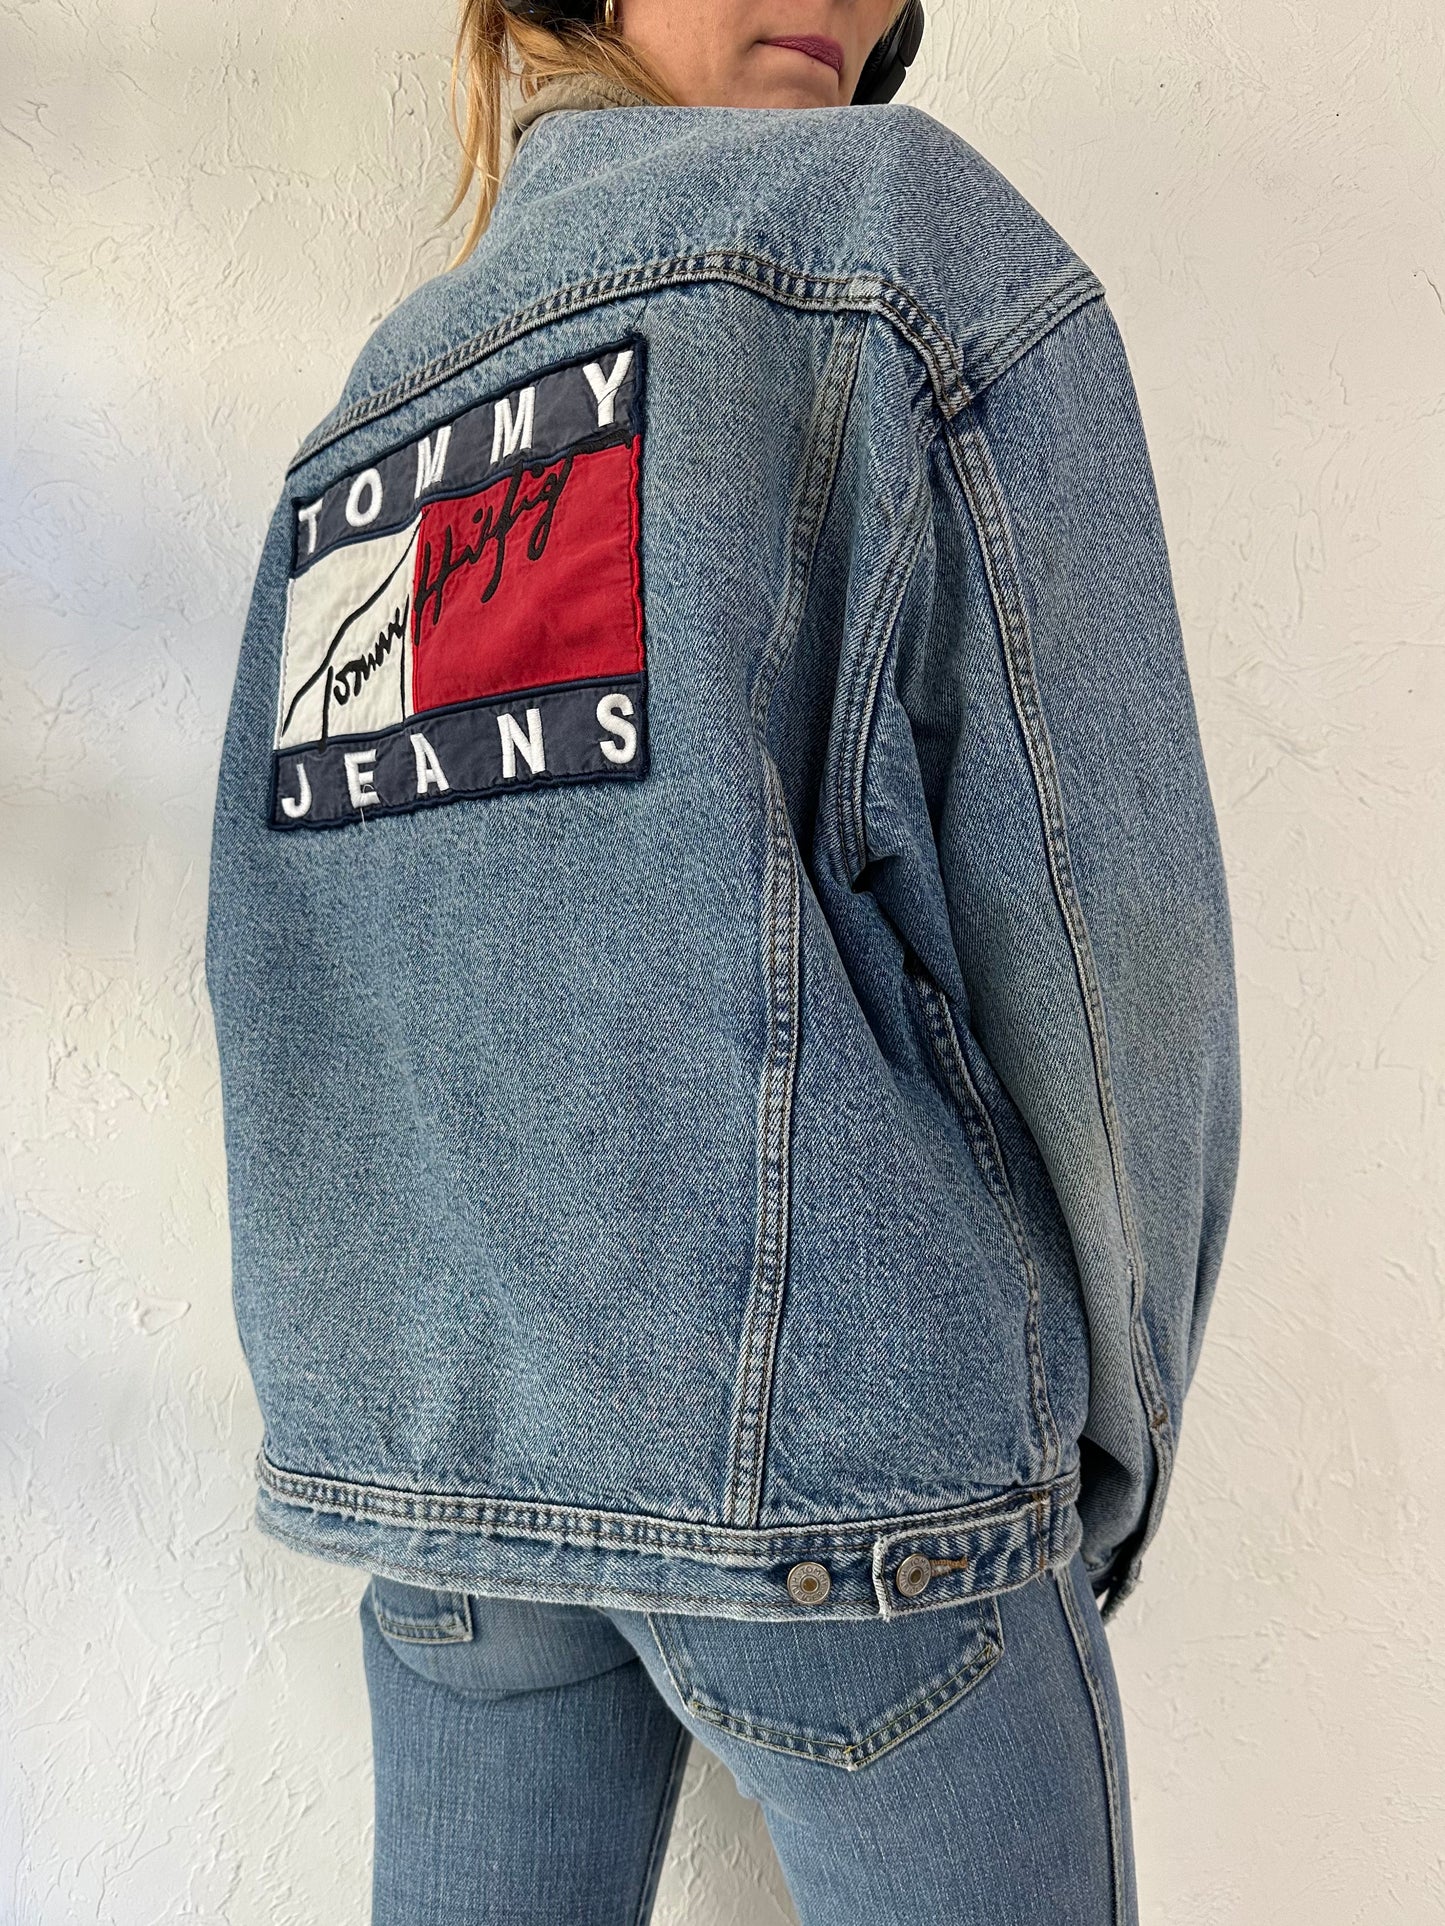 90s 'Tommy Hilfiger' Thrashed Denim Jacket / Large